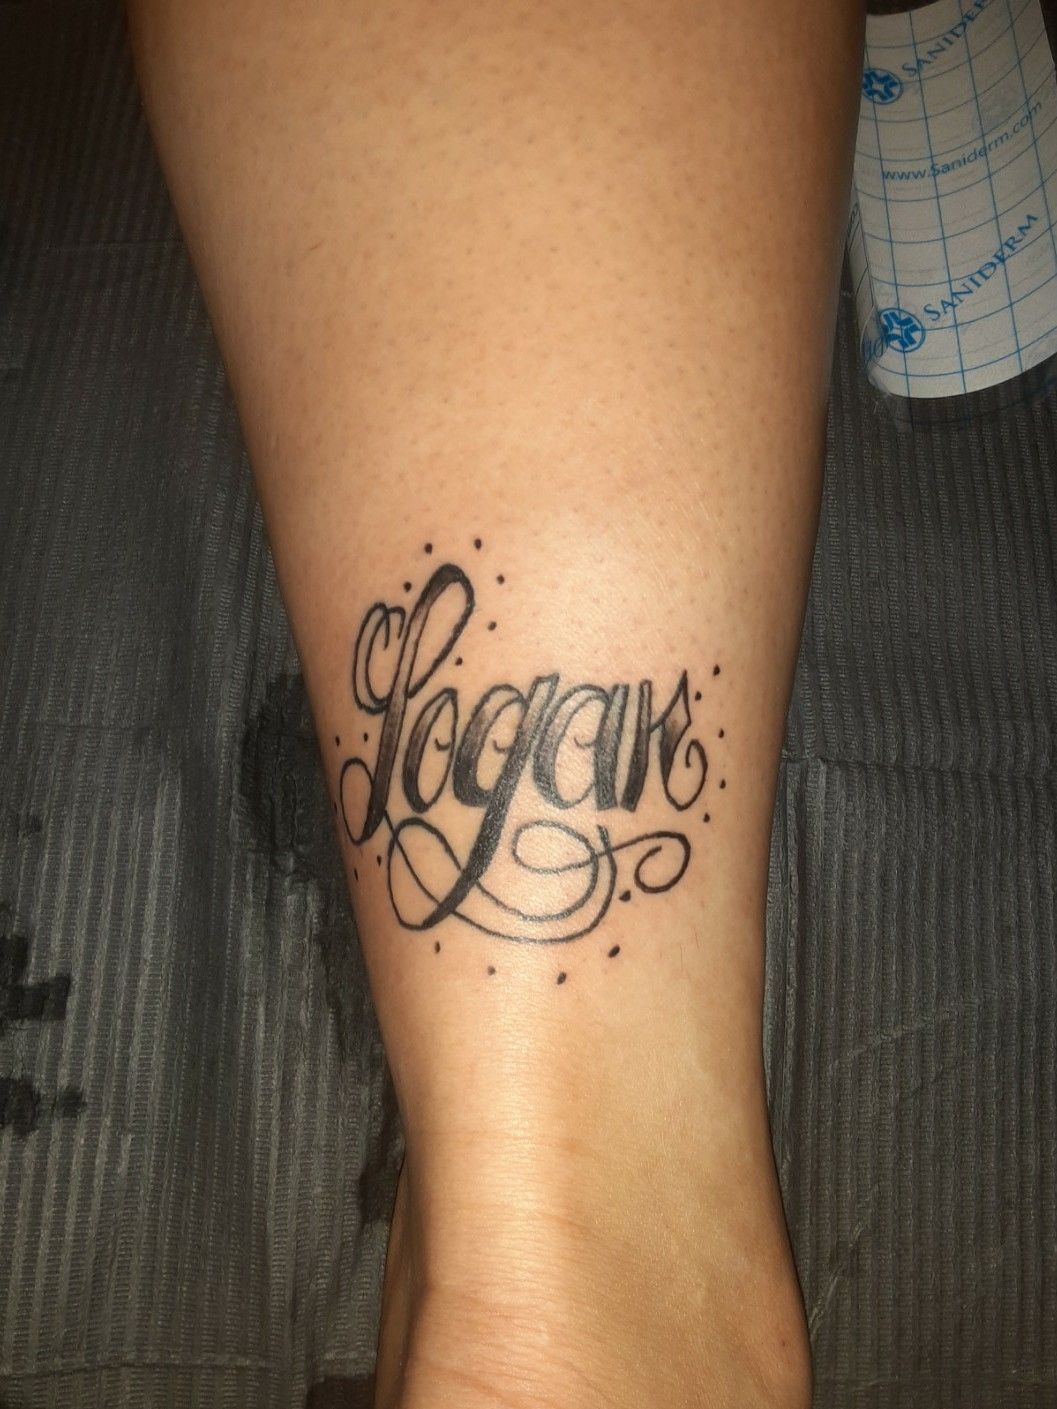 Logan tattoo ideas